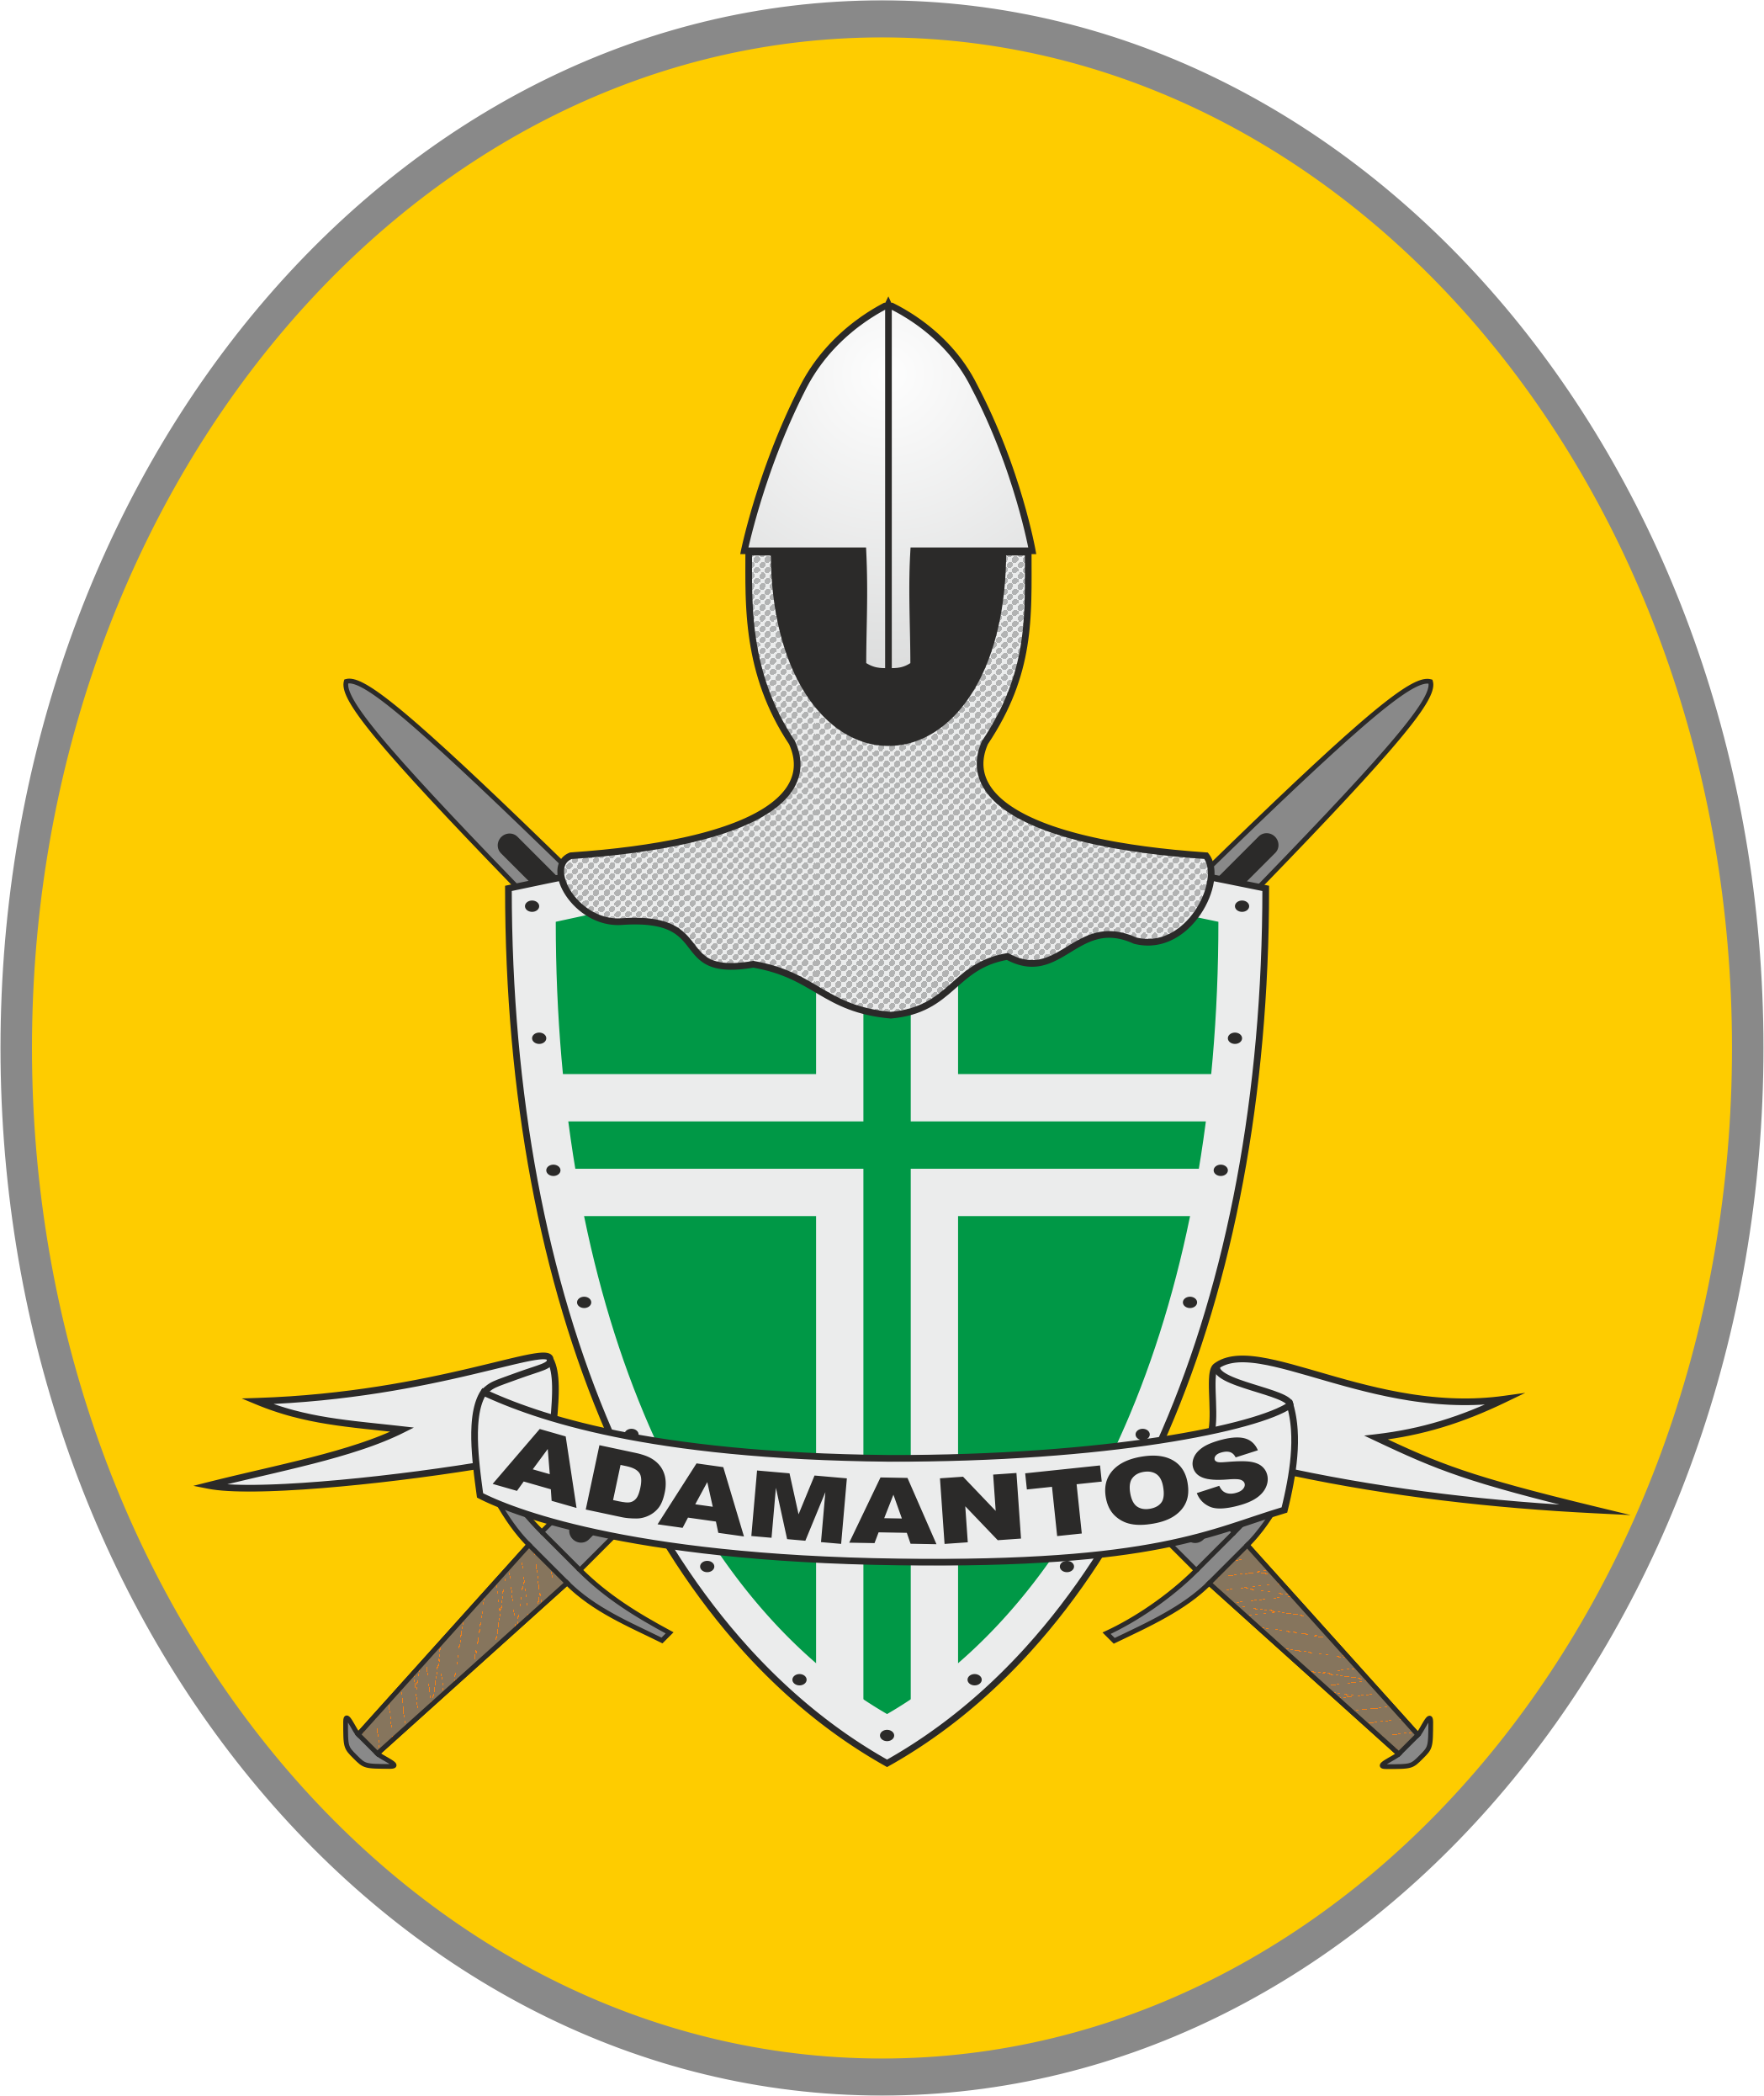 Adamantos - Damy i Rycerze Księstwa Pomorskiego